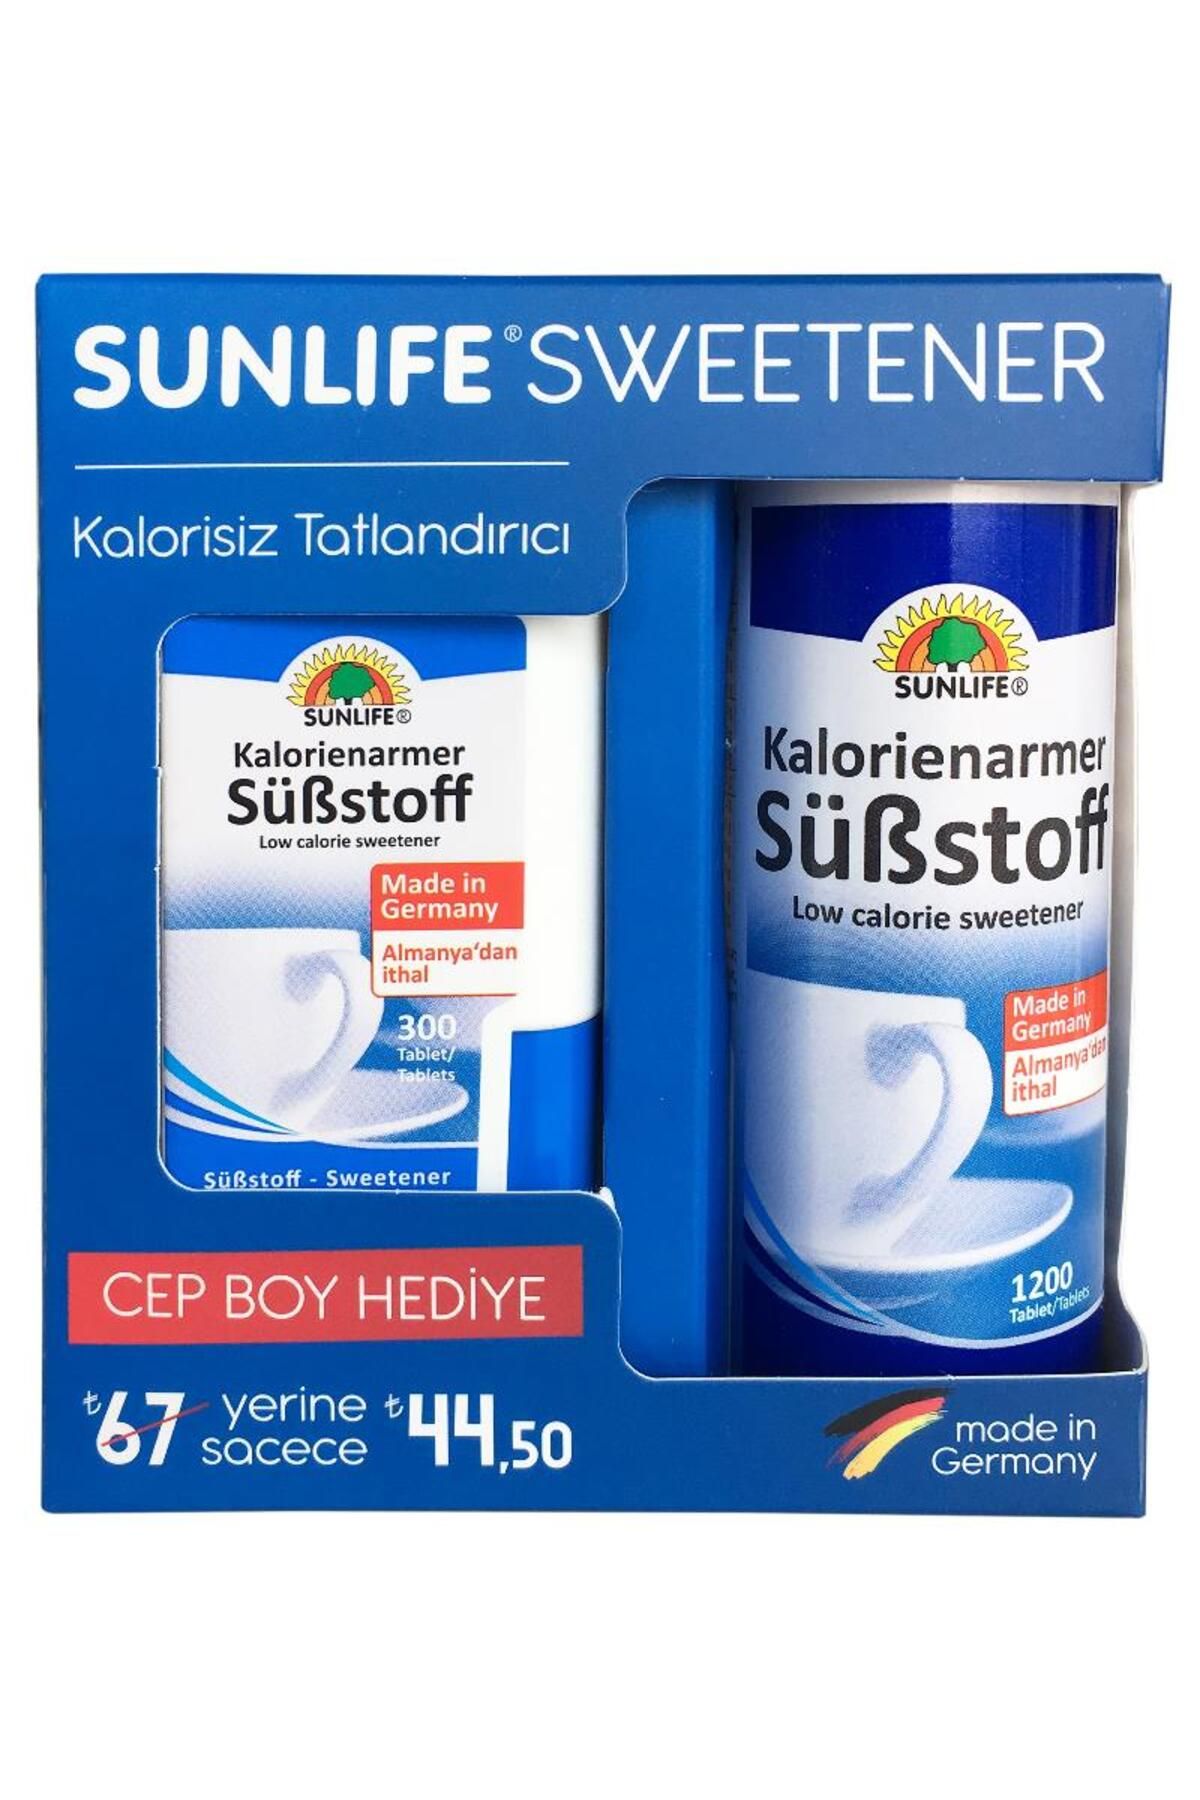 Sunlife Sweetener 1200 + Tatlandırıcı 300 Tablet Cep Boy